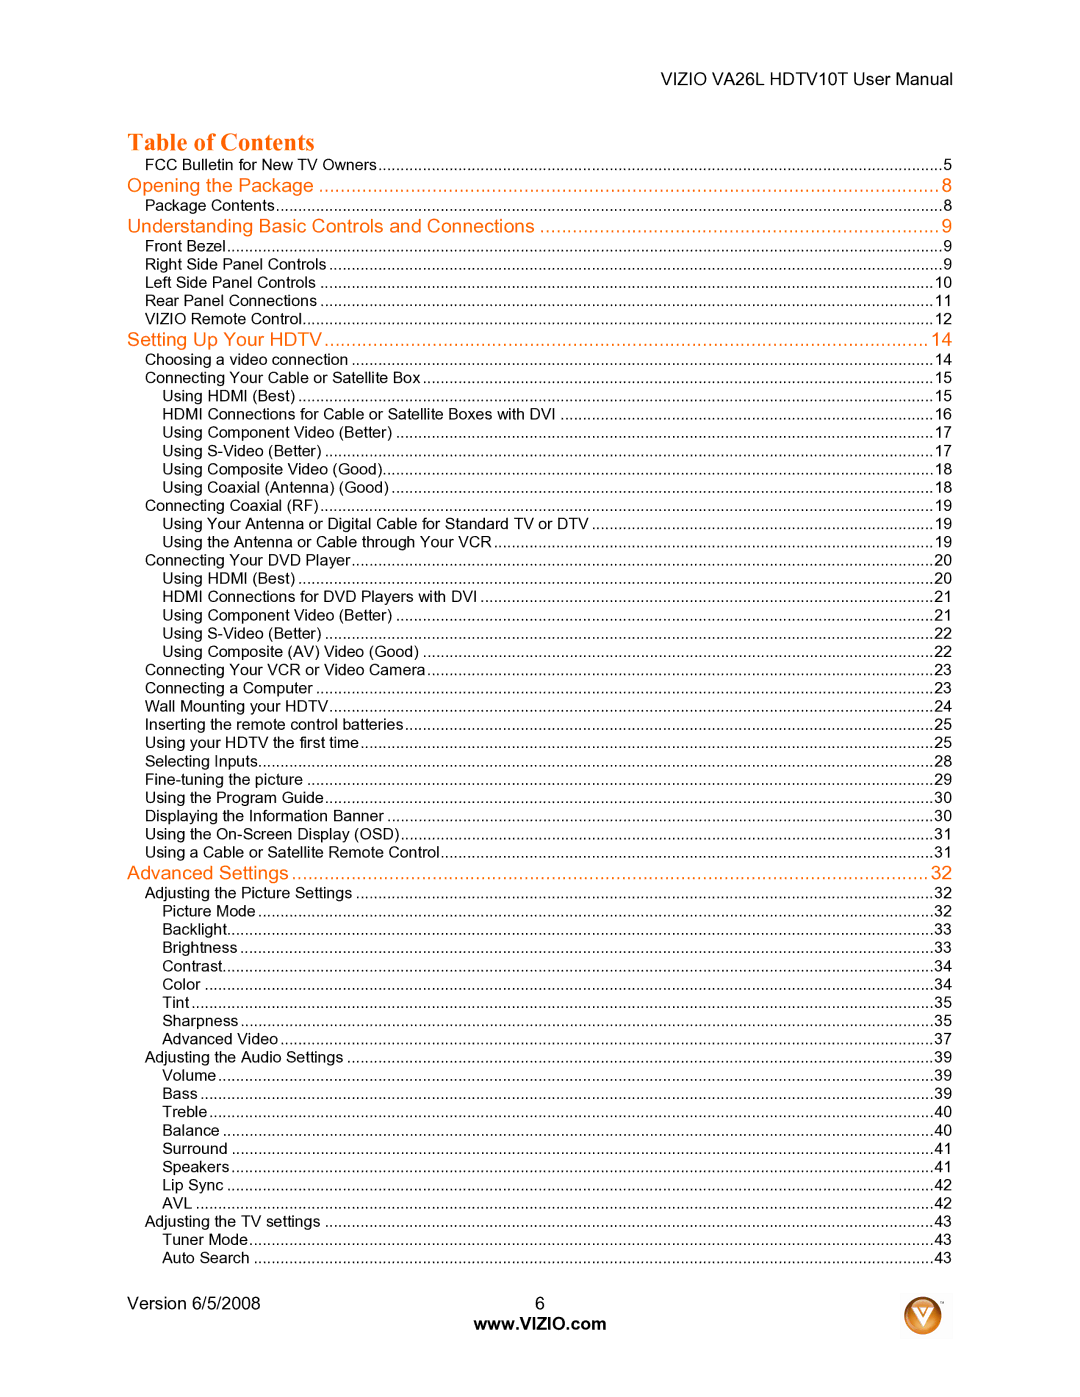 Vizio VA26L user manual Table of Contents 